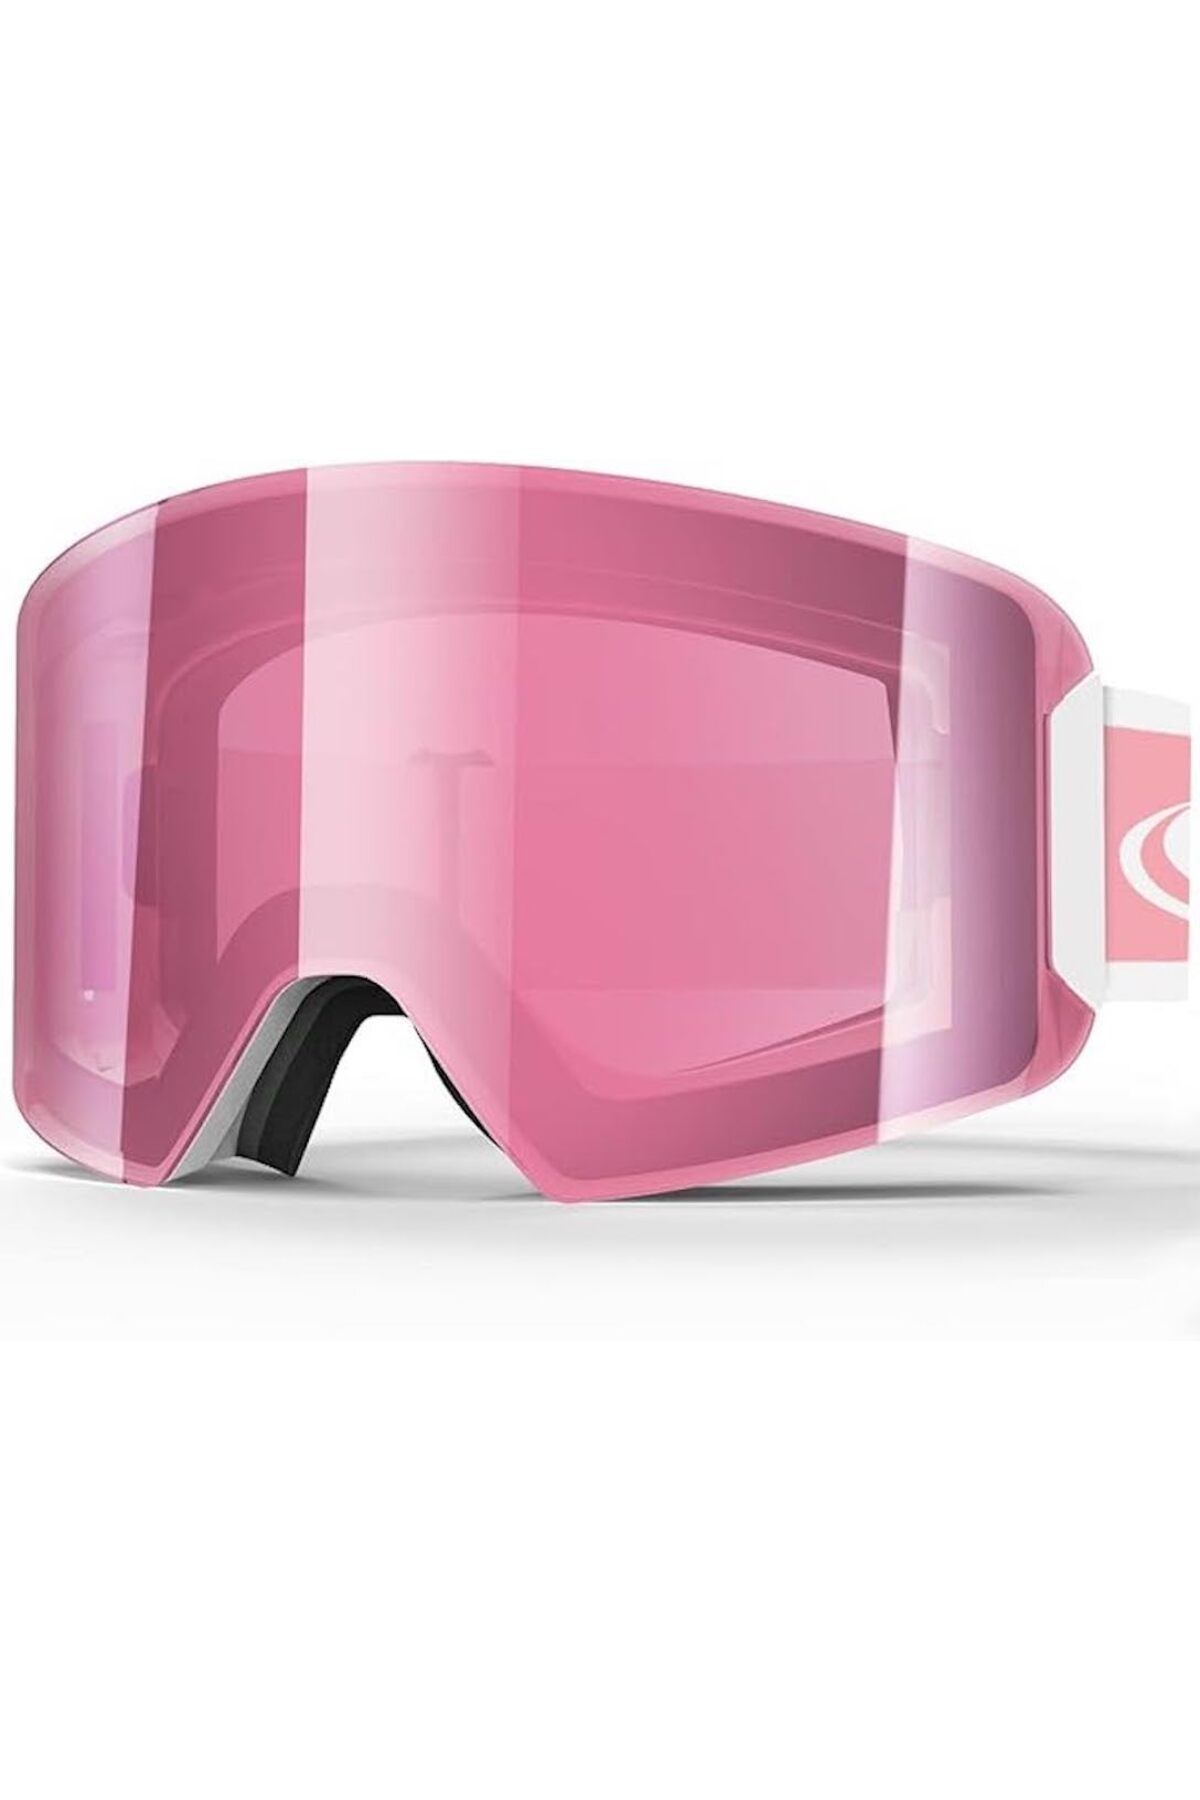 Findway Kayak Gözlüğü: %100 UV Koruma, Anti Sis, Rüzgar Geçirmez - Açık Hava Sporları için İdeal